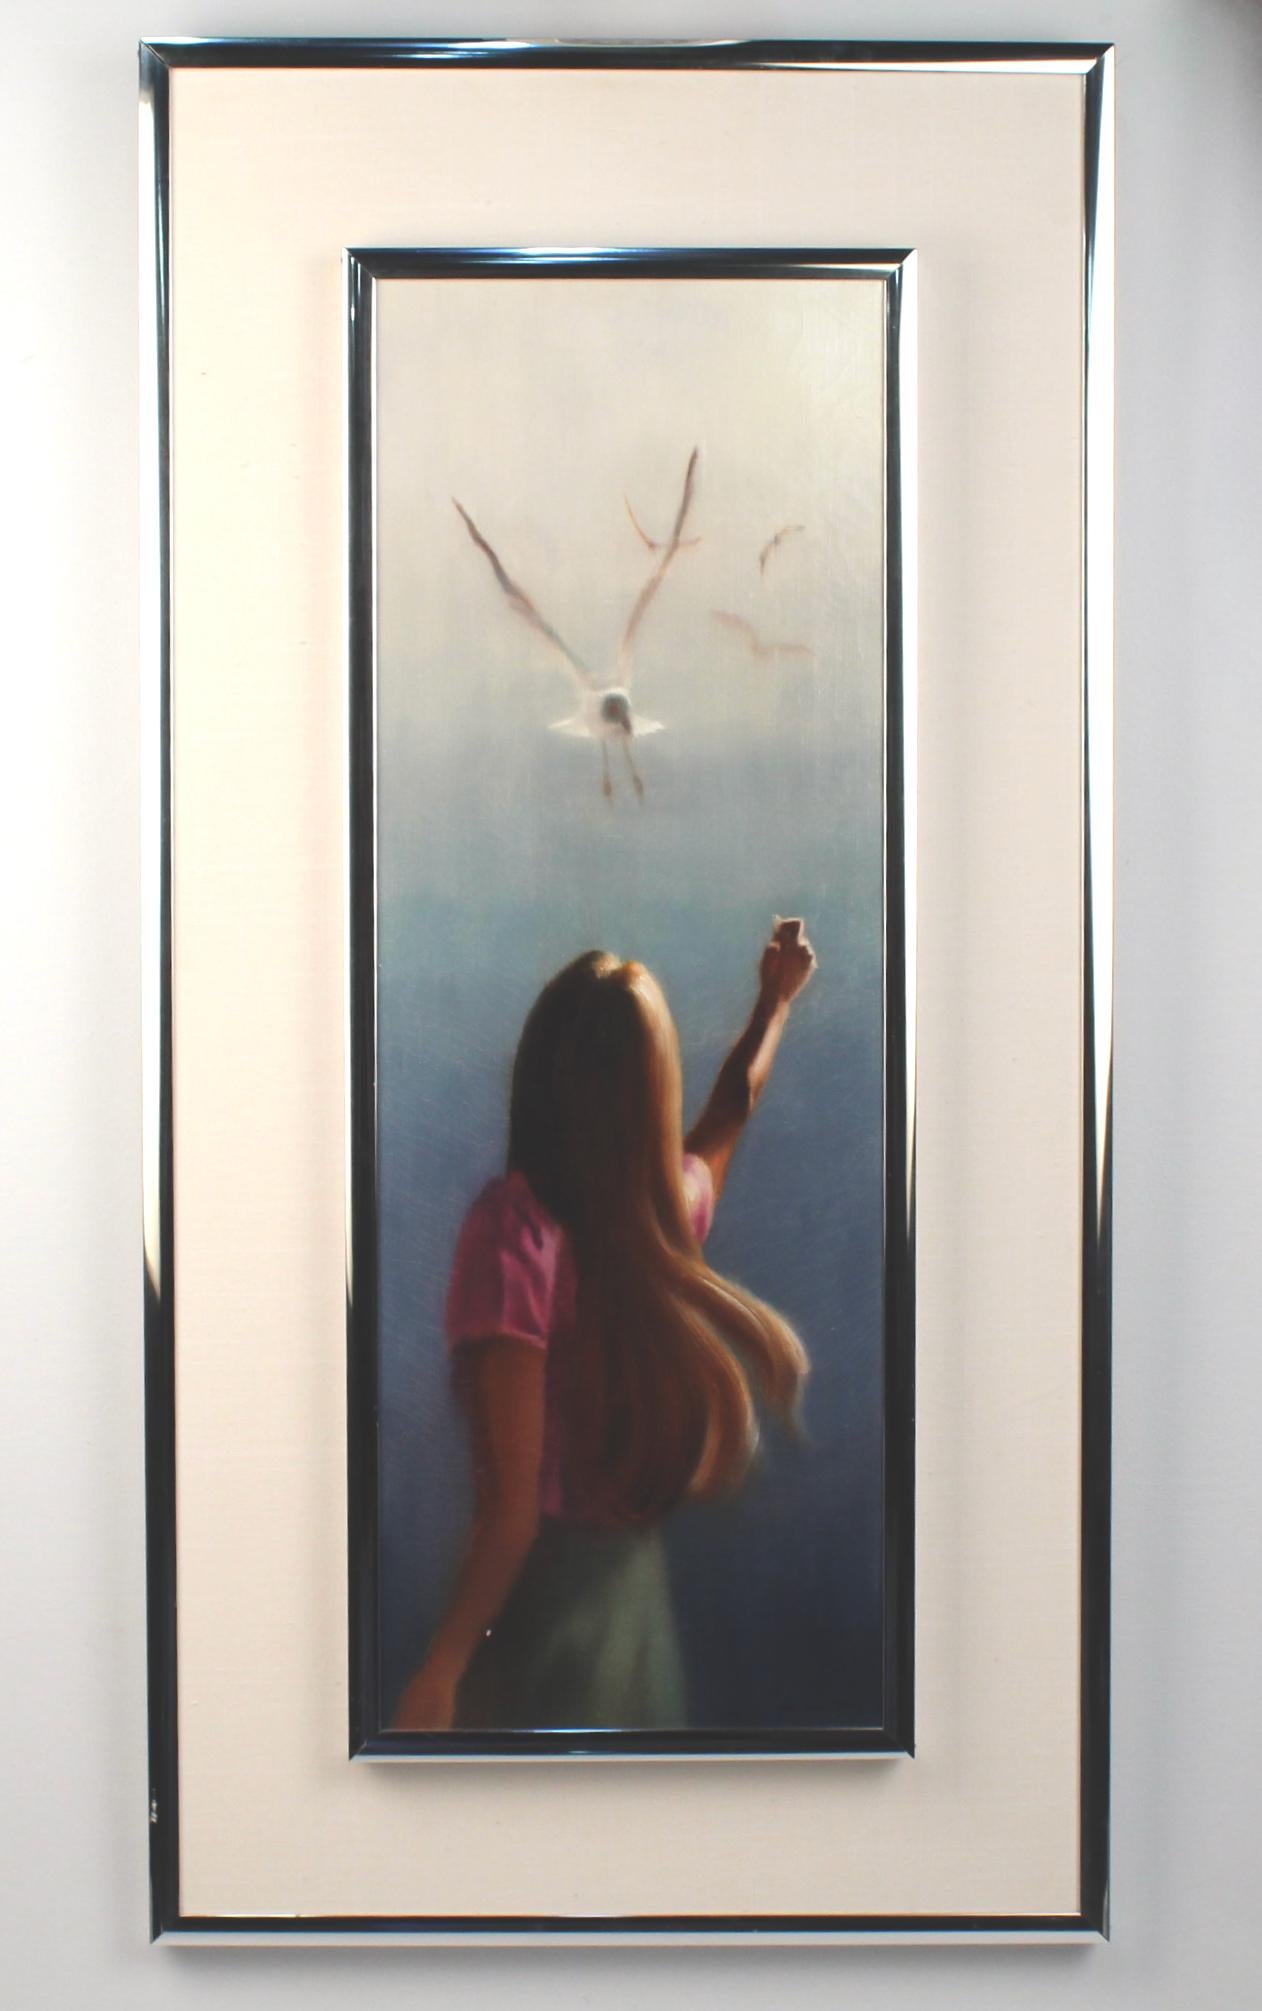 Nous vous proposons une peinture à l'huile sur toile des années 1980 représentant une femme et des mouettes.

Hal Singer (1919-2003) a étudié à l'université de New York et à l'Art Students League. Il a été représenté dans des galeries de la côte